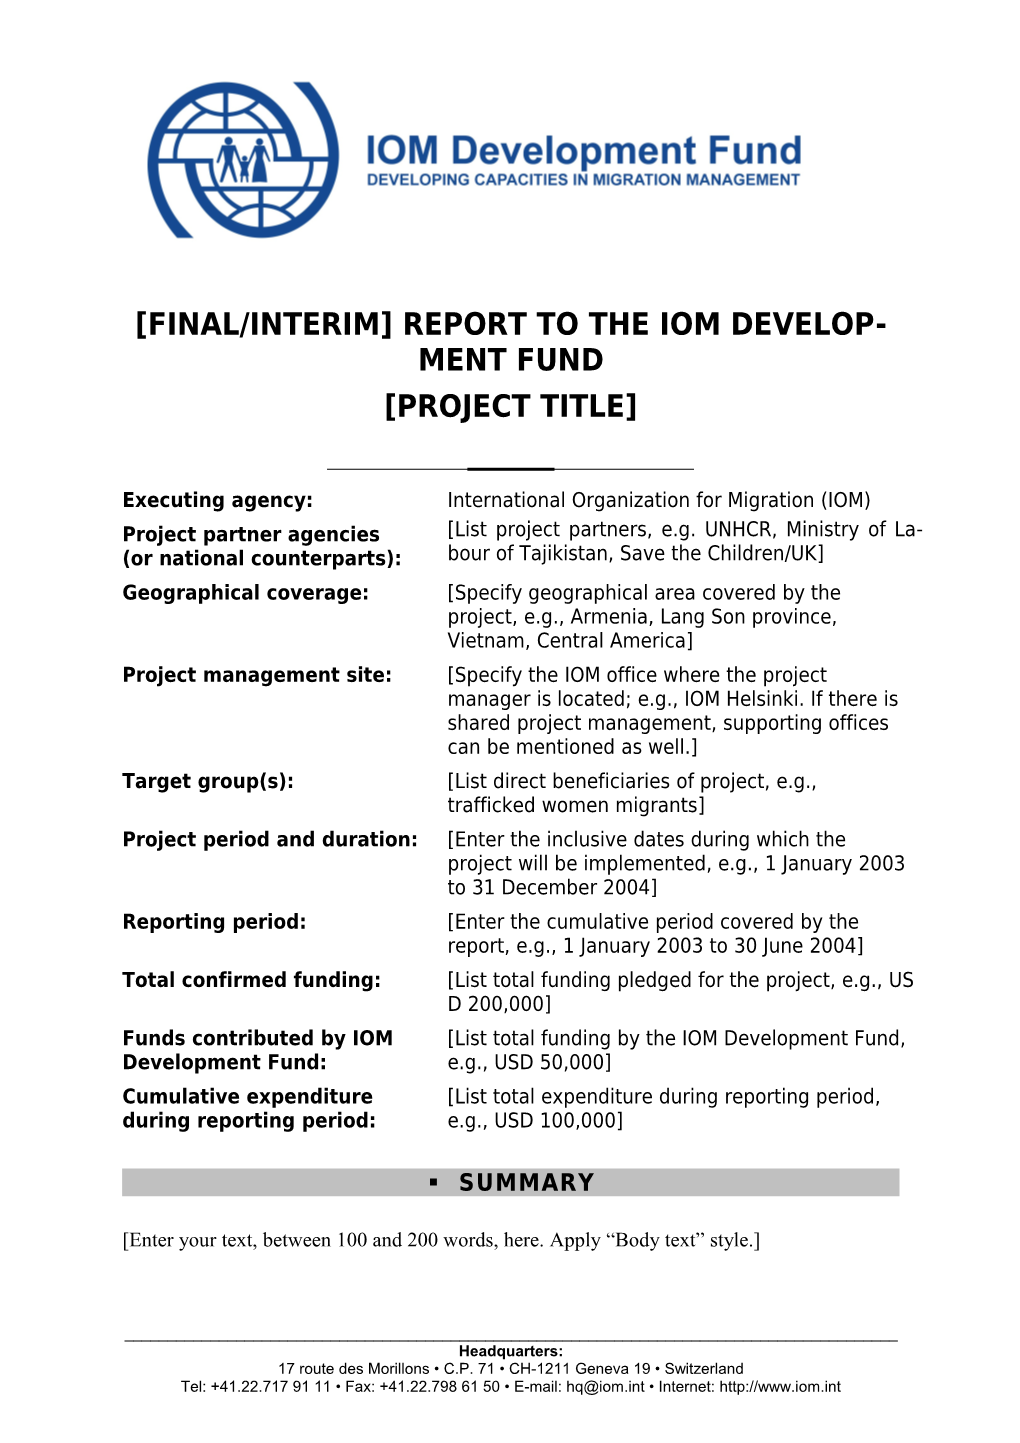 Final/Interim Report